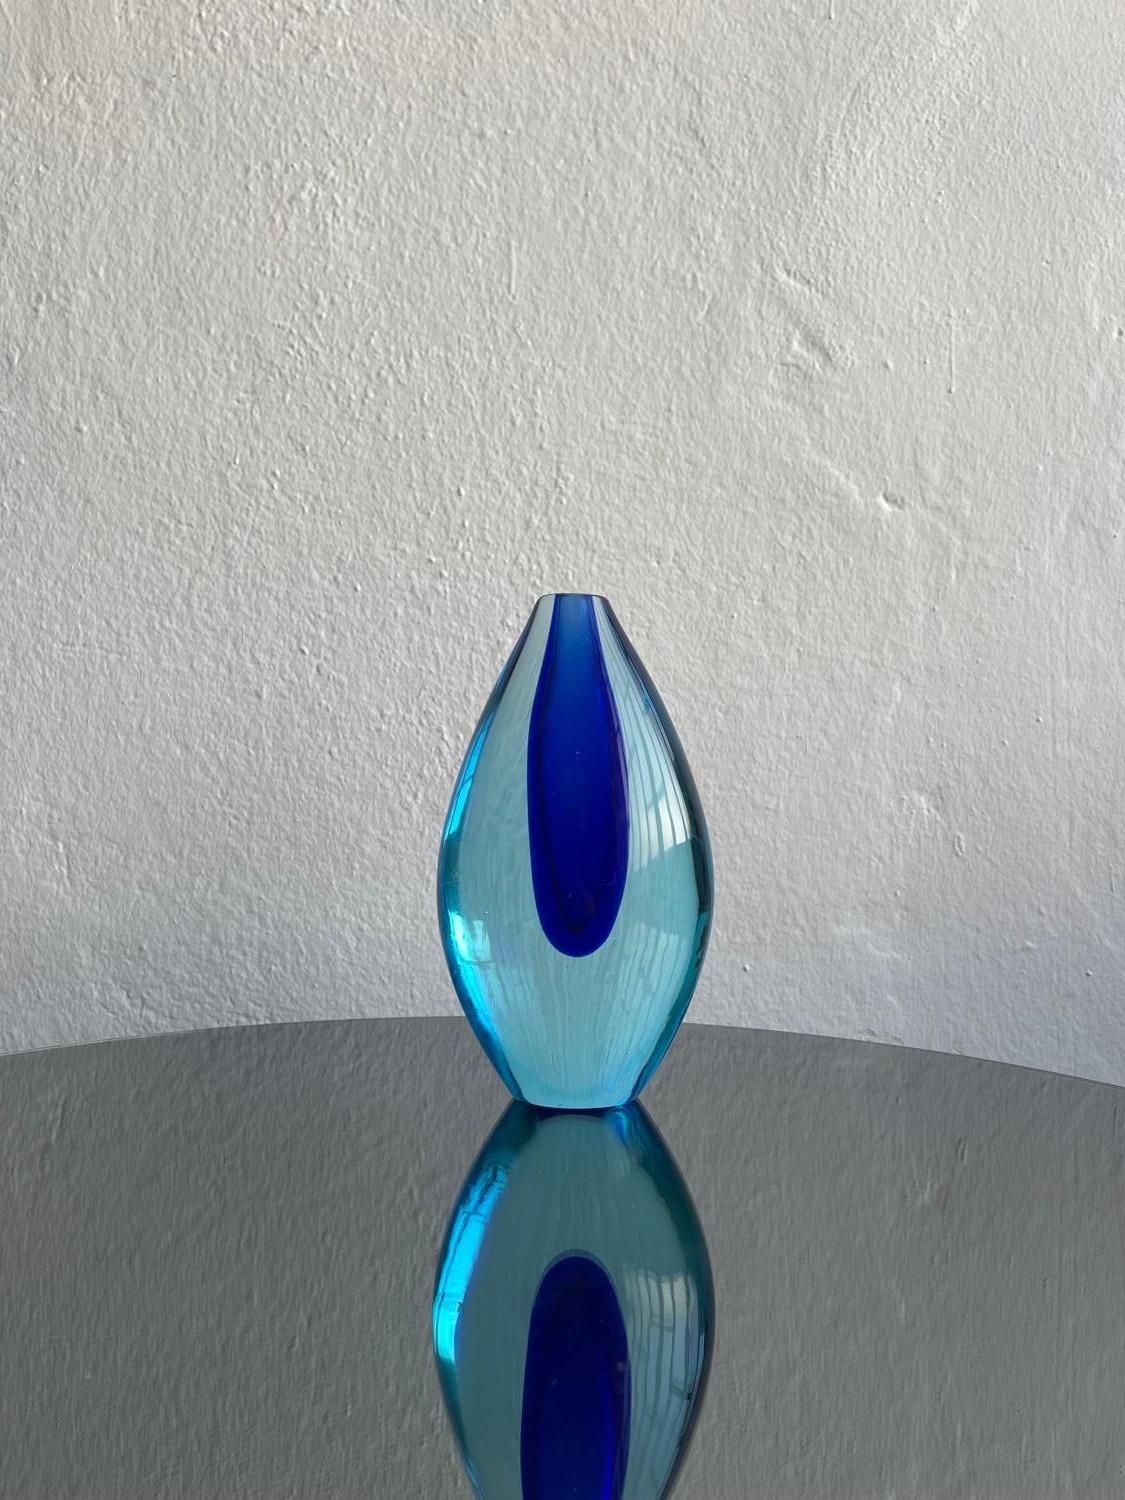 Flavio Poli für Seguso - Sommerso Murano Vase - Collectional Glas

